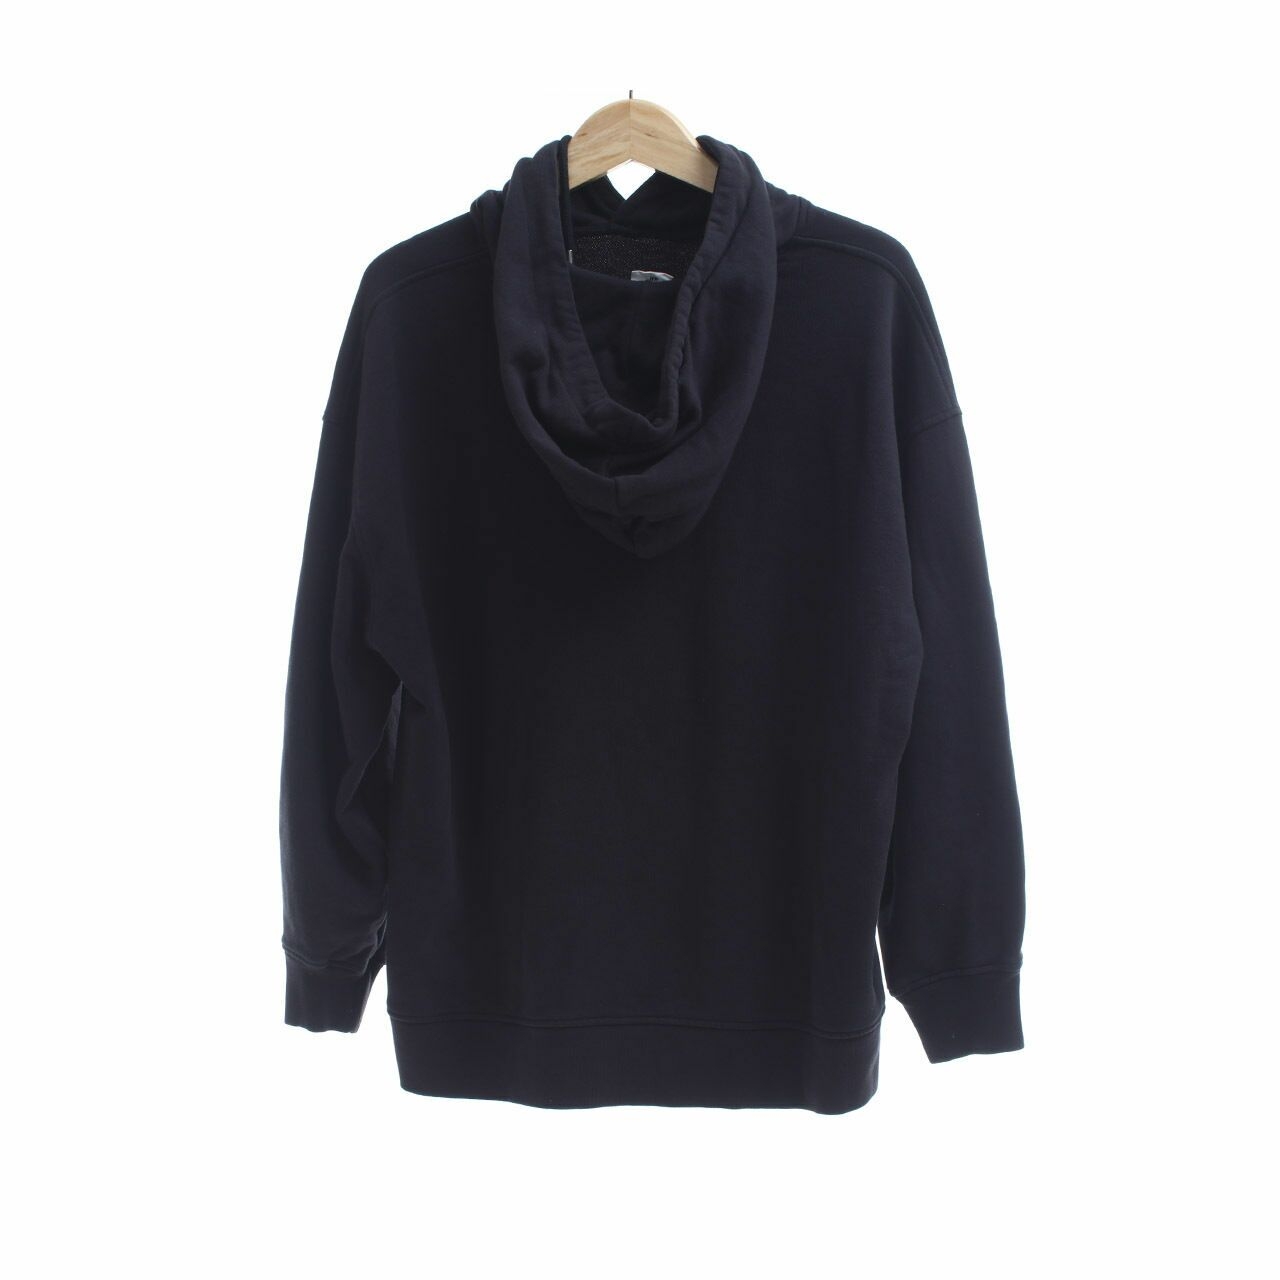 H&M x Helena Christensen Black Sweater